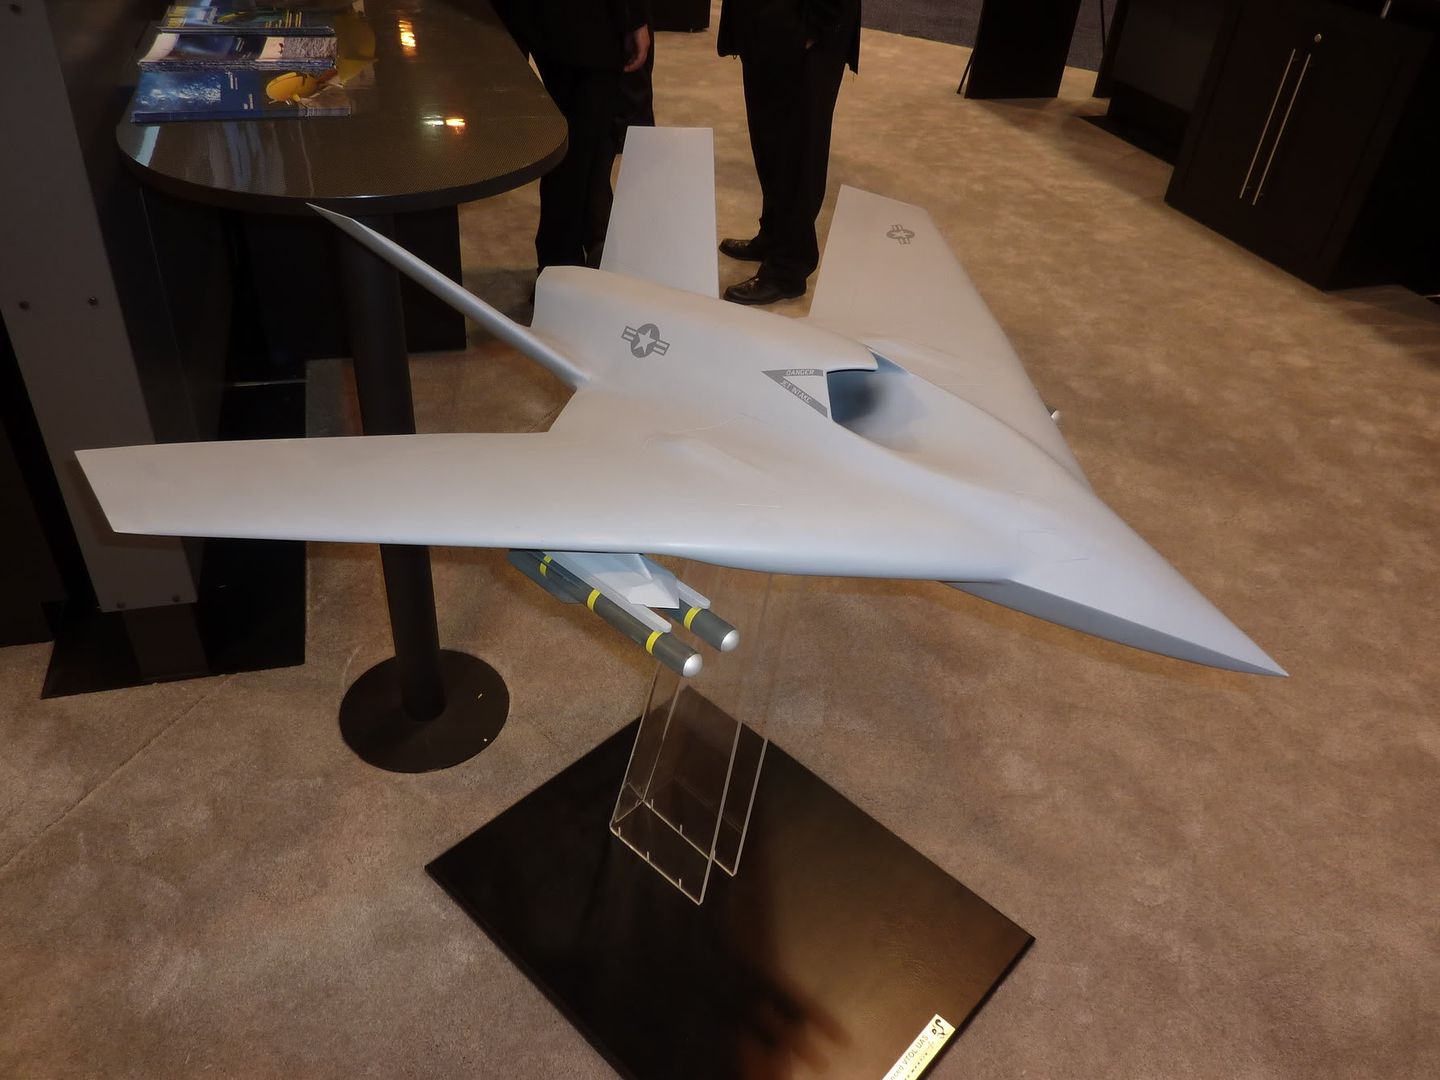 UAV Lockheed